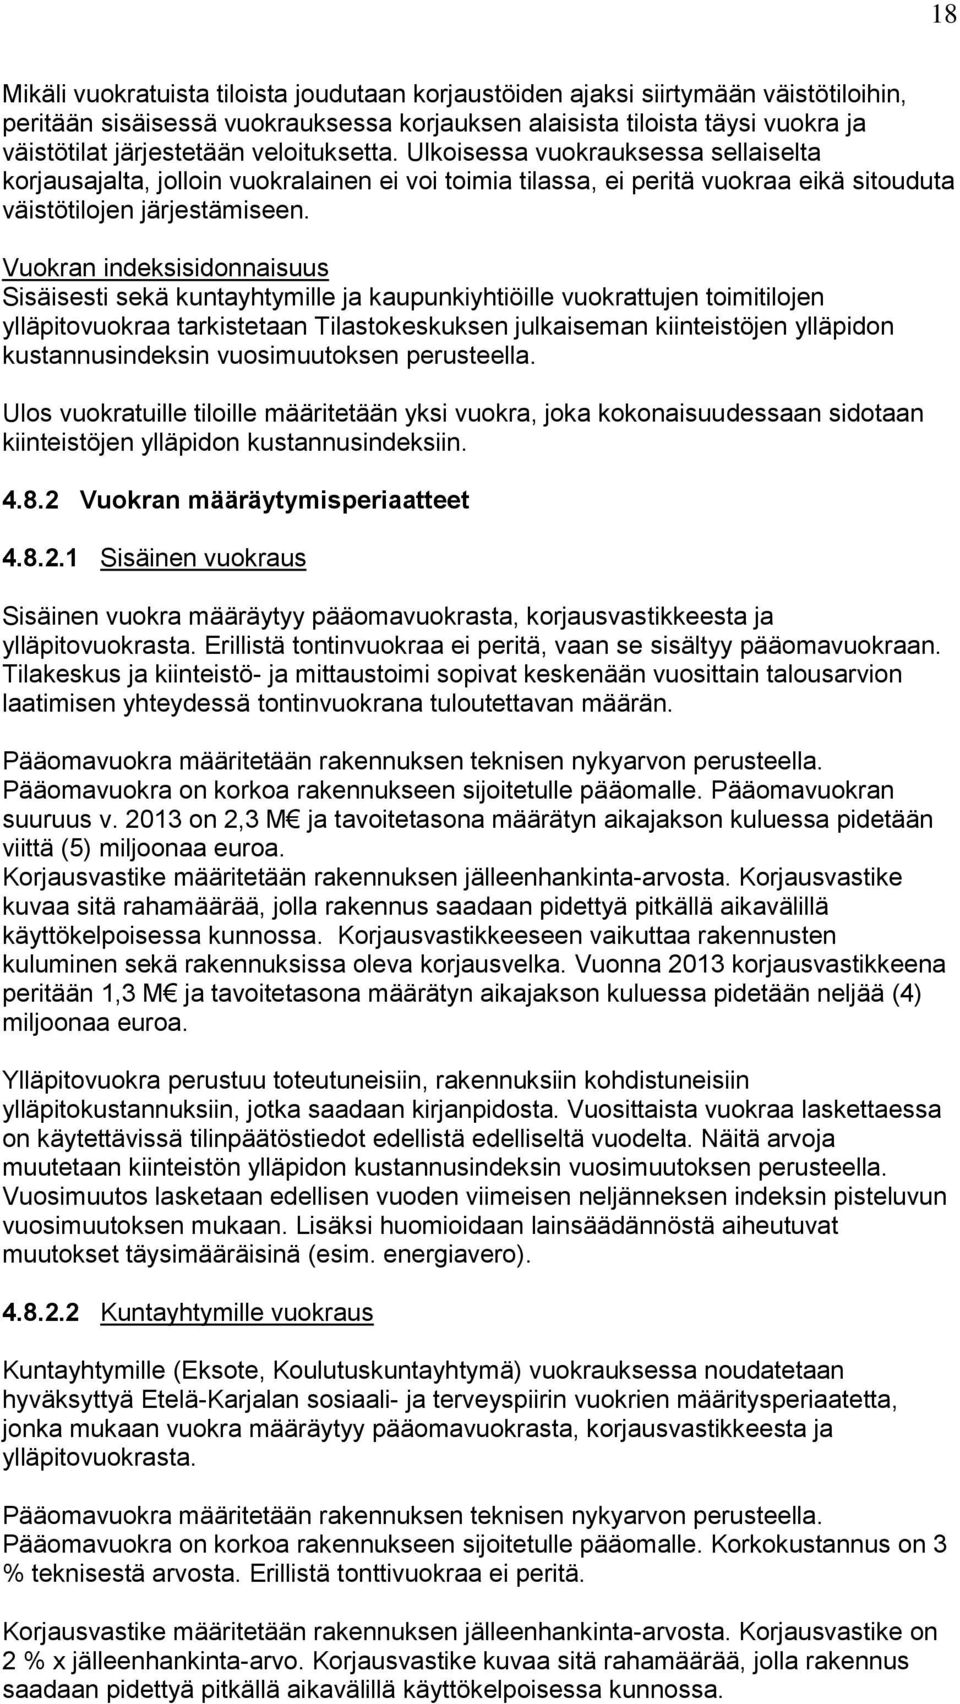 Vuokran indeksisidonnaisuus Sisäisesti sekä kuntayhtymille ja kaupunkiyhtiöille vuokrattujen toimitilojen ylläpitovuokraa tarkistetaan Tilastokeskuksen julkaiseman kiinteistöjen ylläpidon